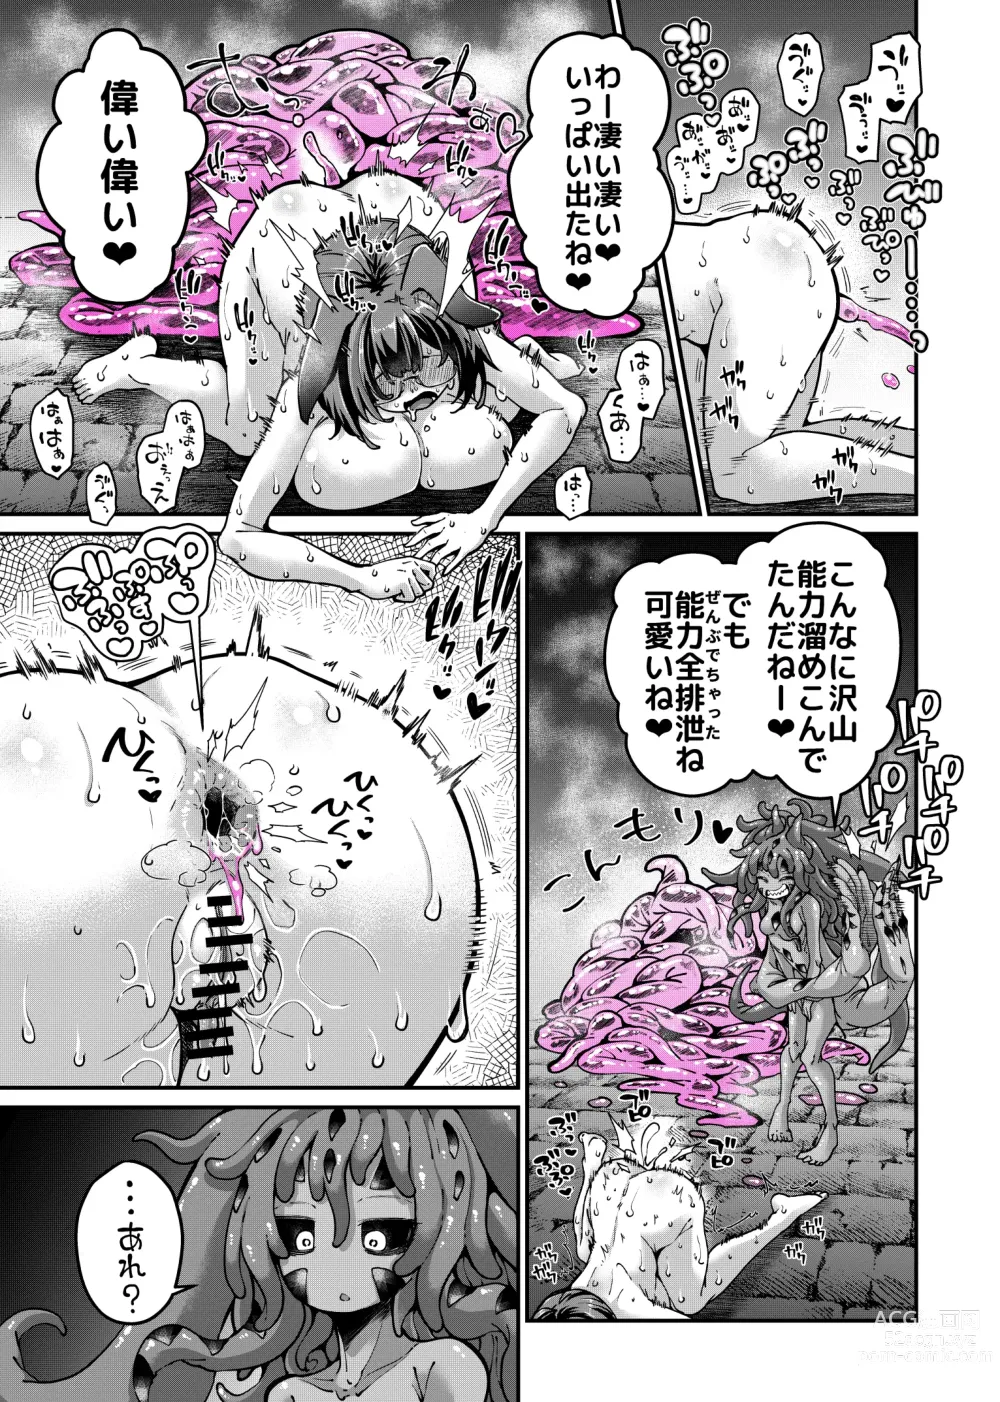 Page 30 of doujinshi Rizinetta VS jishin dungeon 2